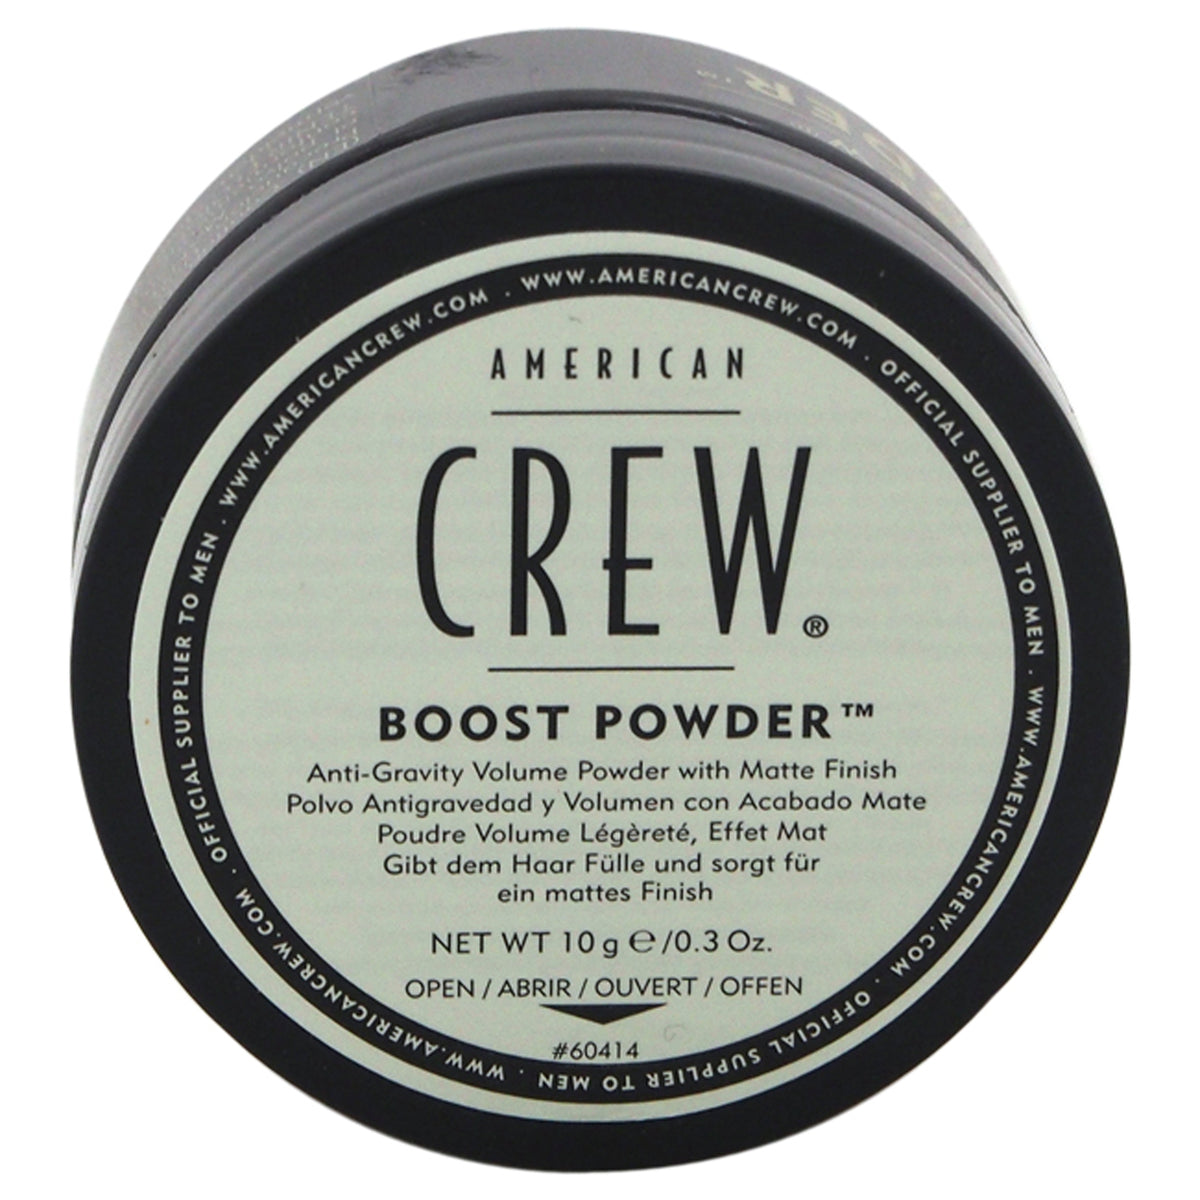 Boost Powder by American Crew for Men - 0.3 oz Powder